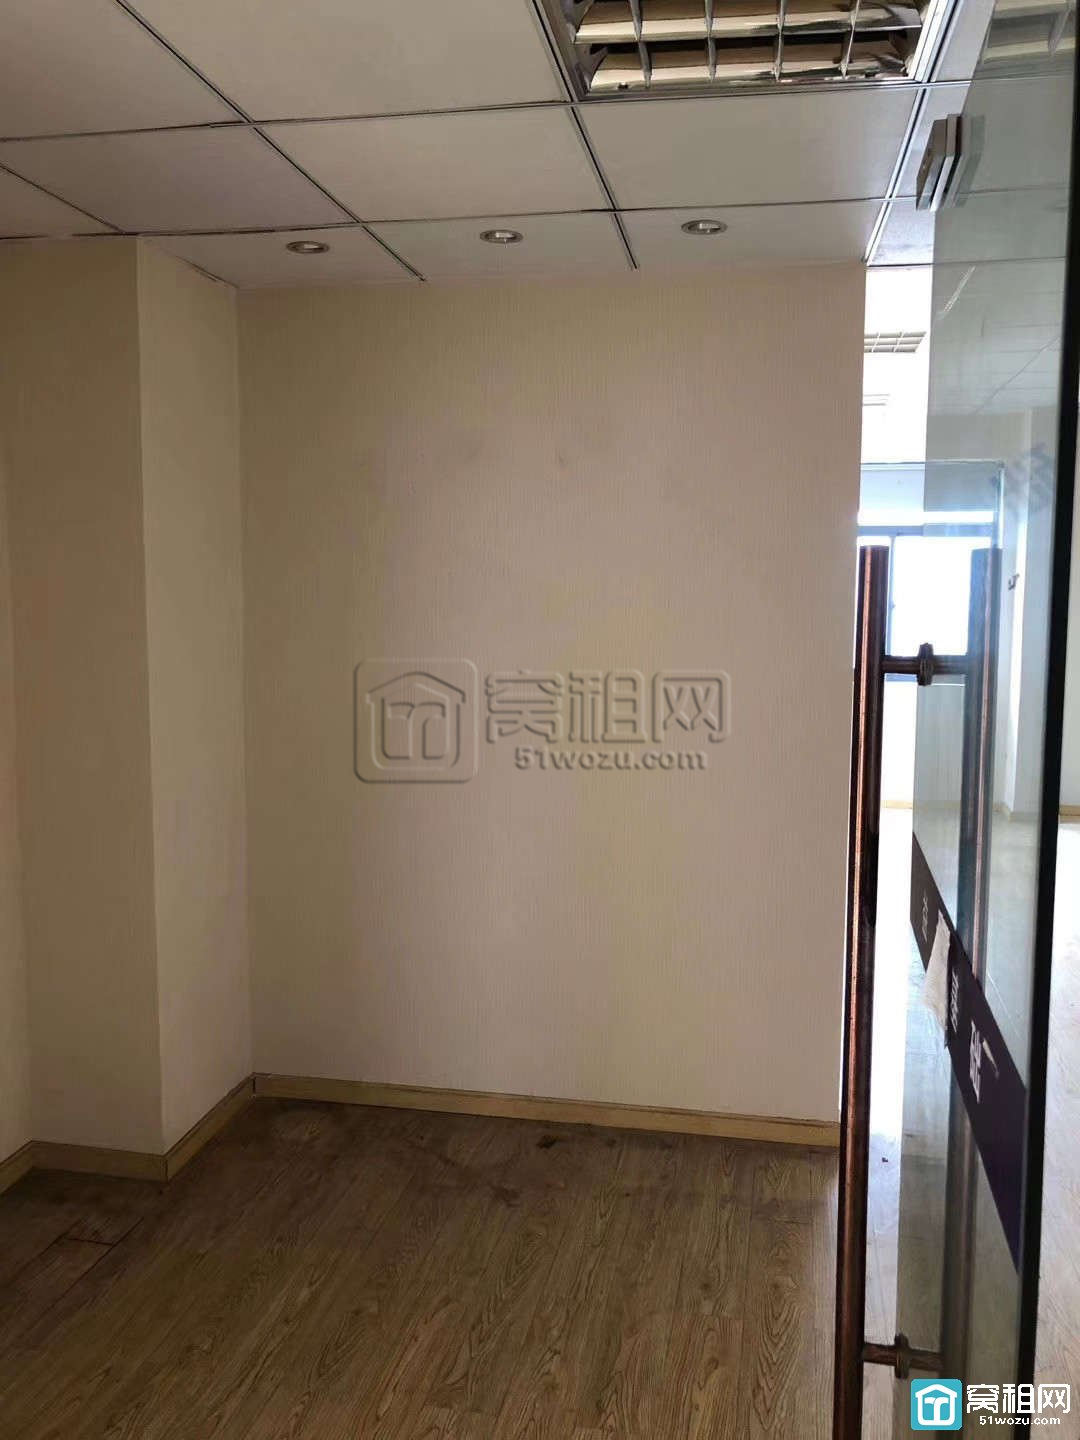 宁波客运中心附近晶崴大厦112.5平米精装办公室2隔间出租有形象墙(图1)